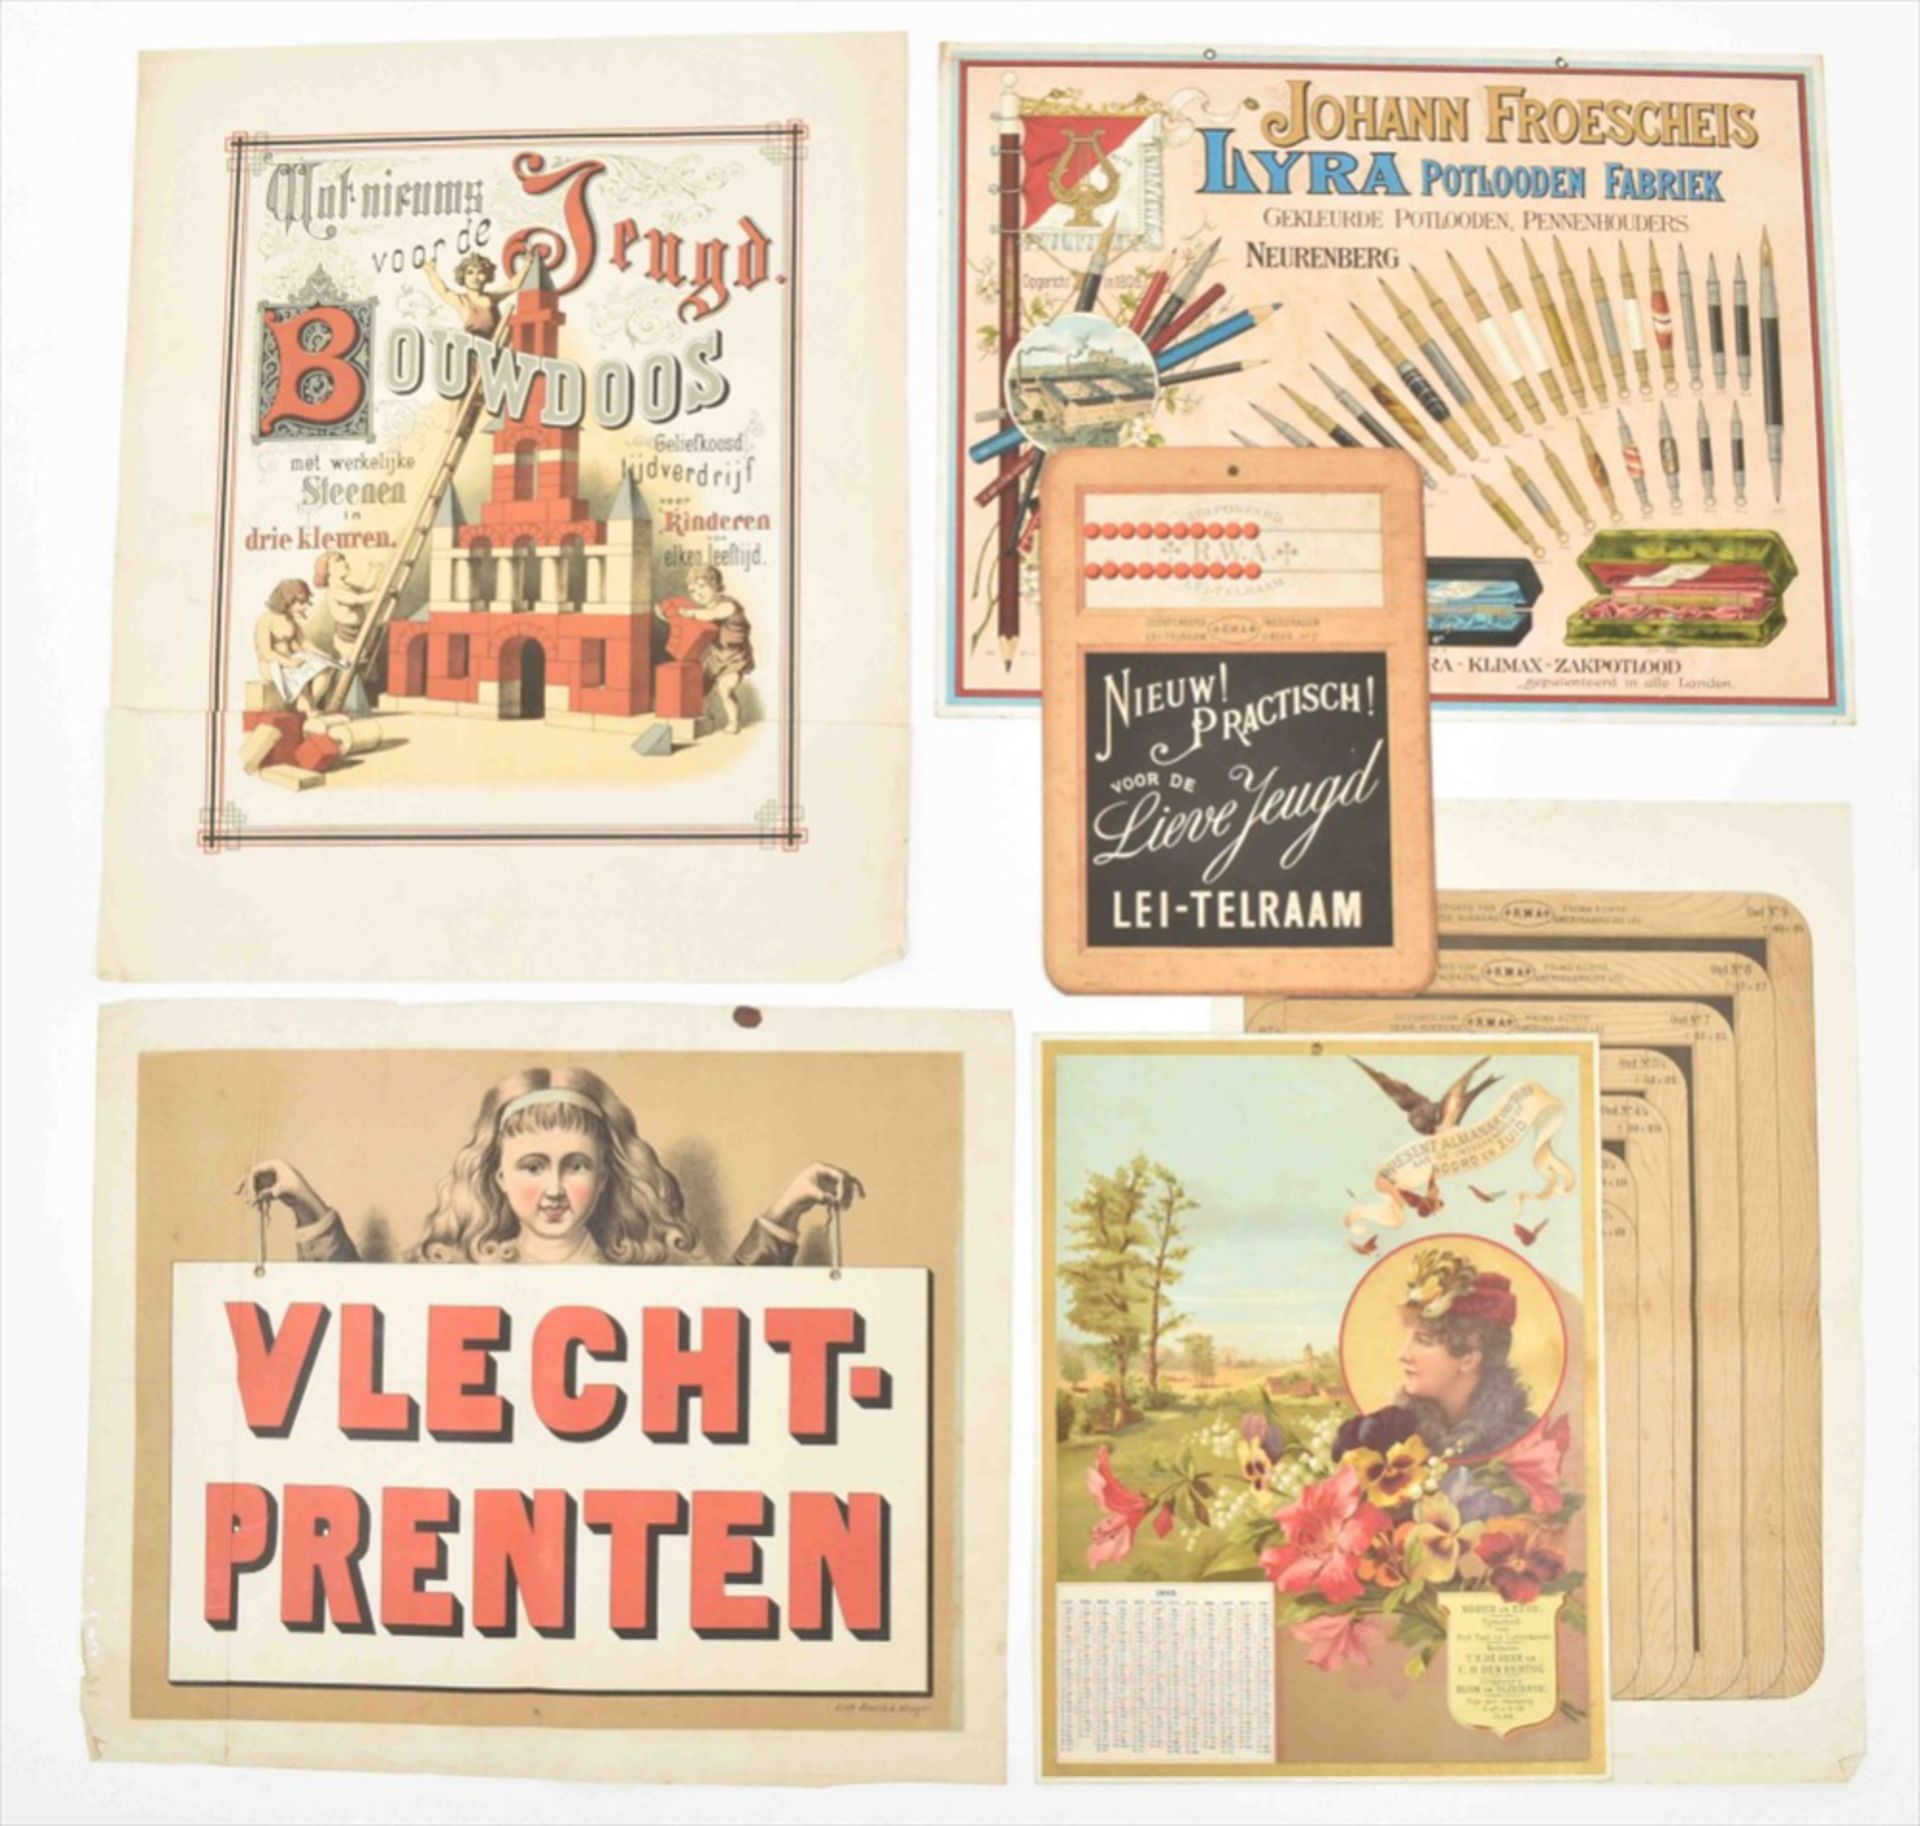 Six posters: (1) "Johann Froescheis Lyra Potlooden Fabriek